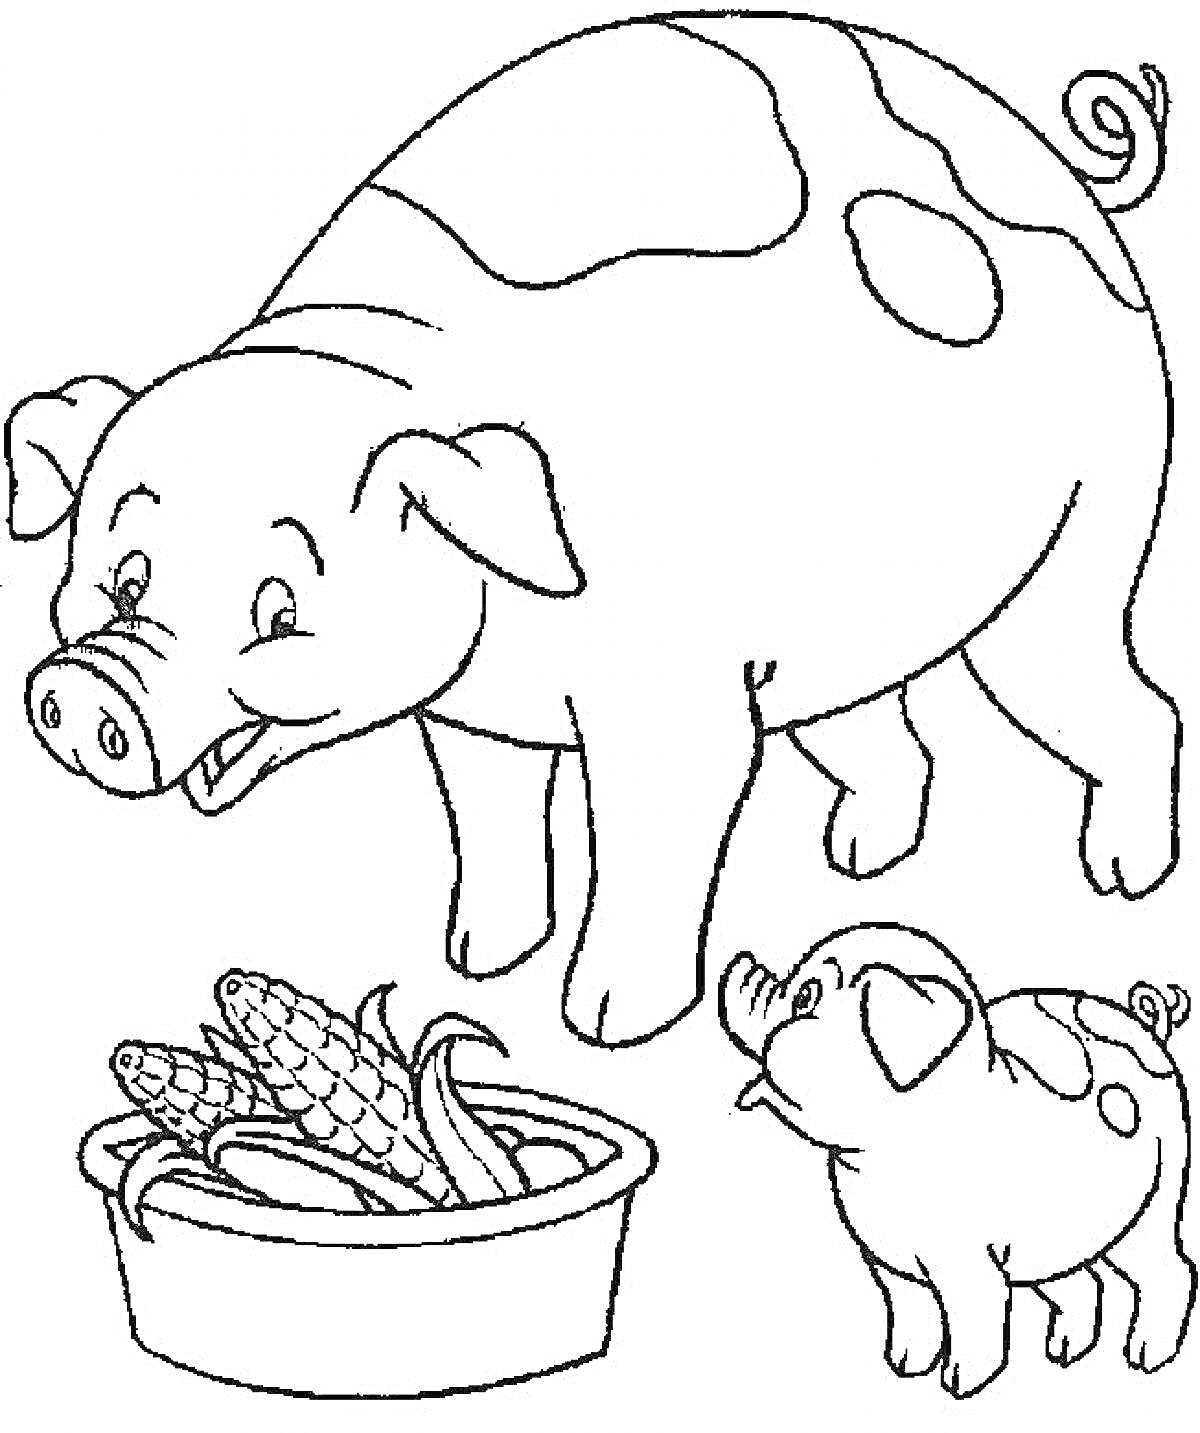 Раскраска Свинья и поросенок возле миски с початками кукурузы